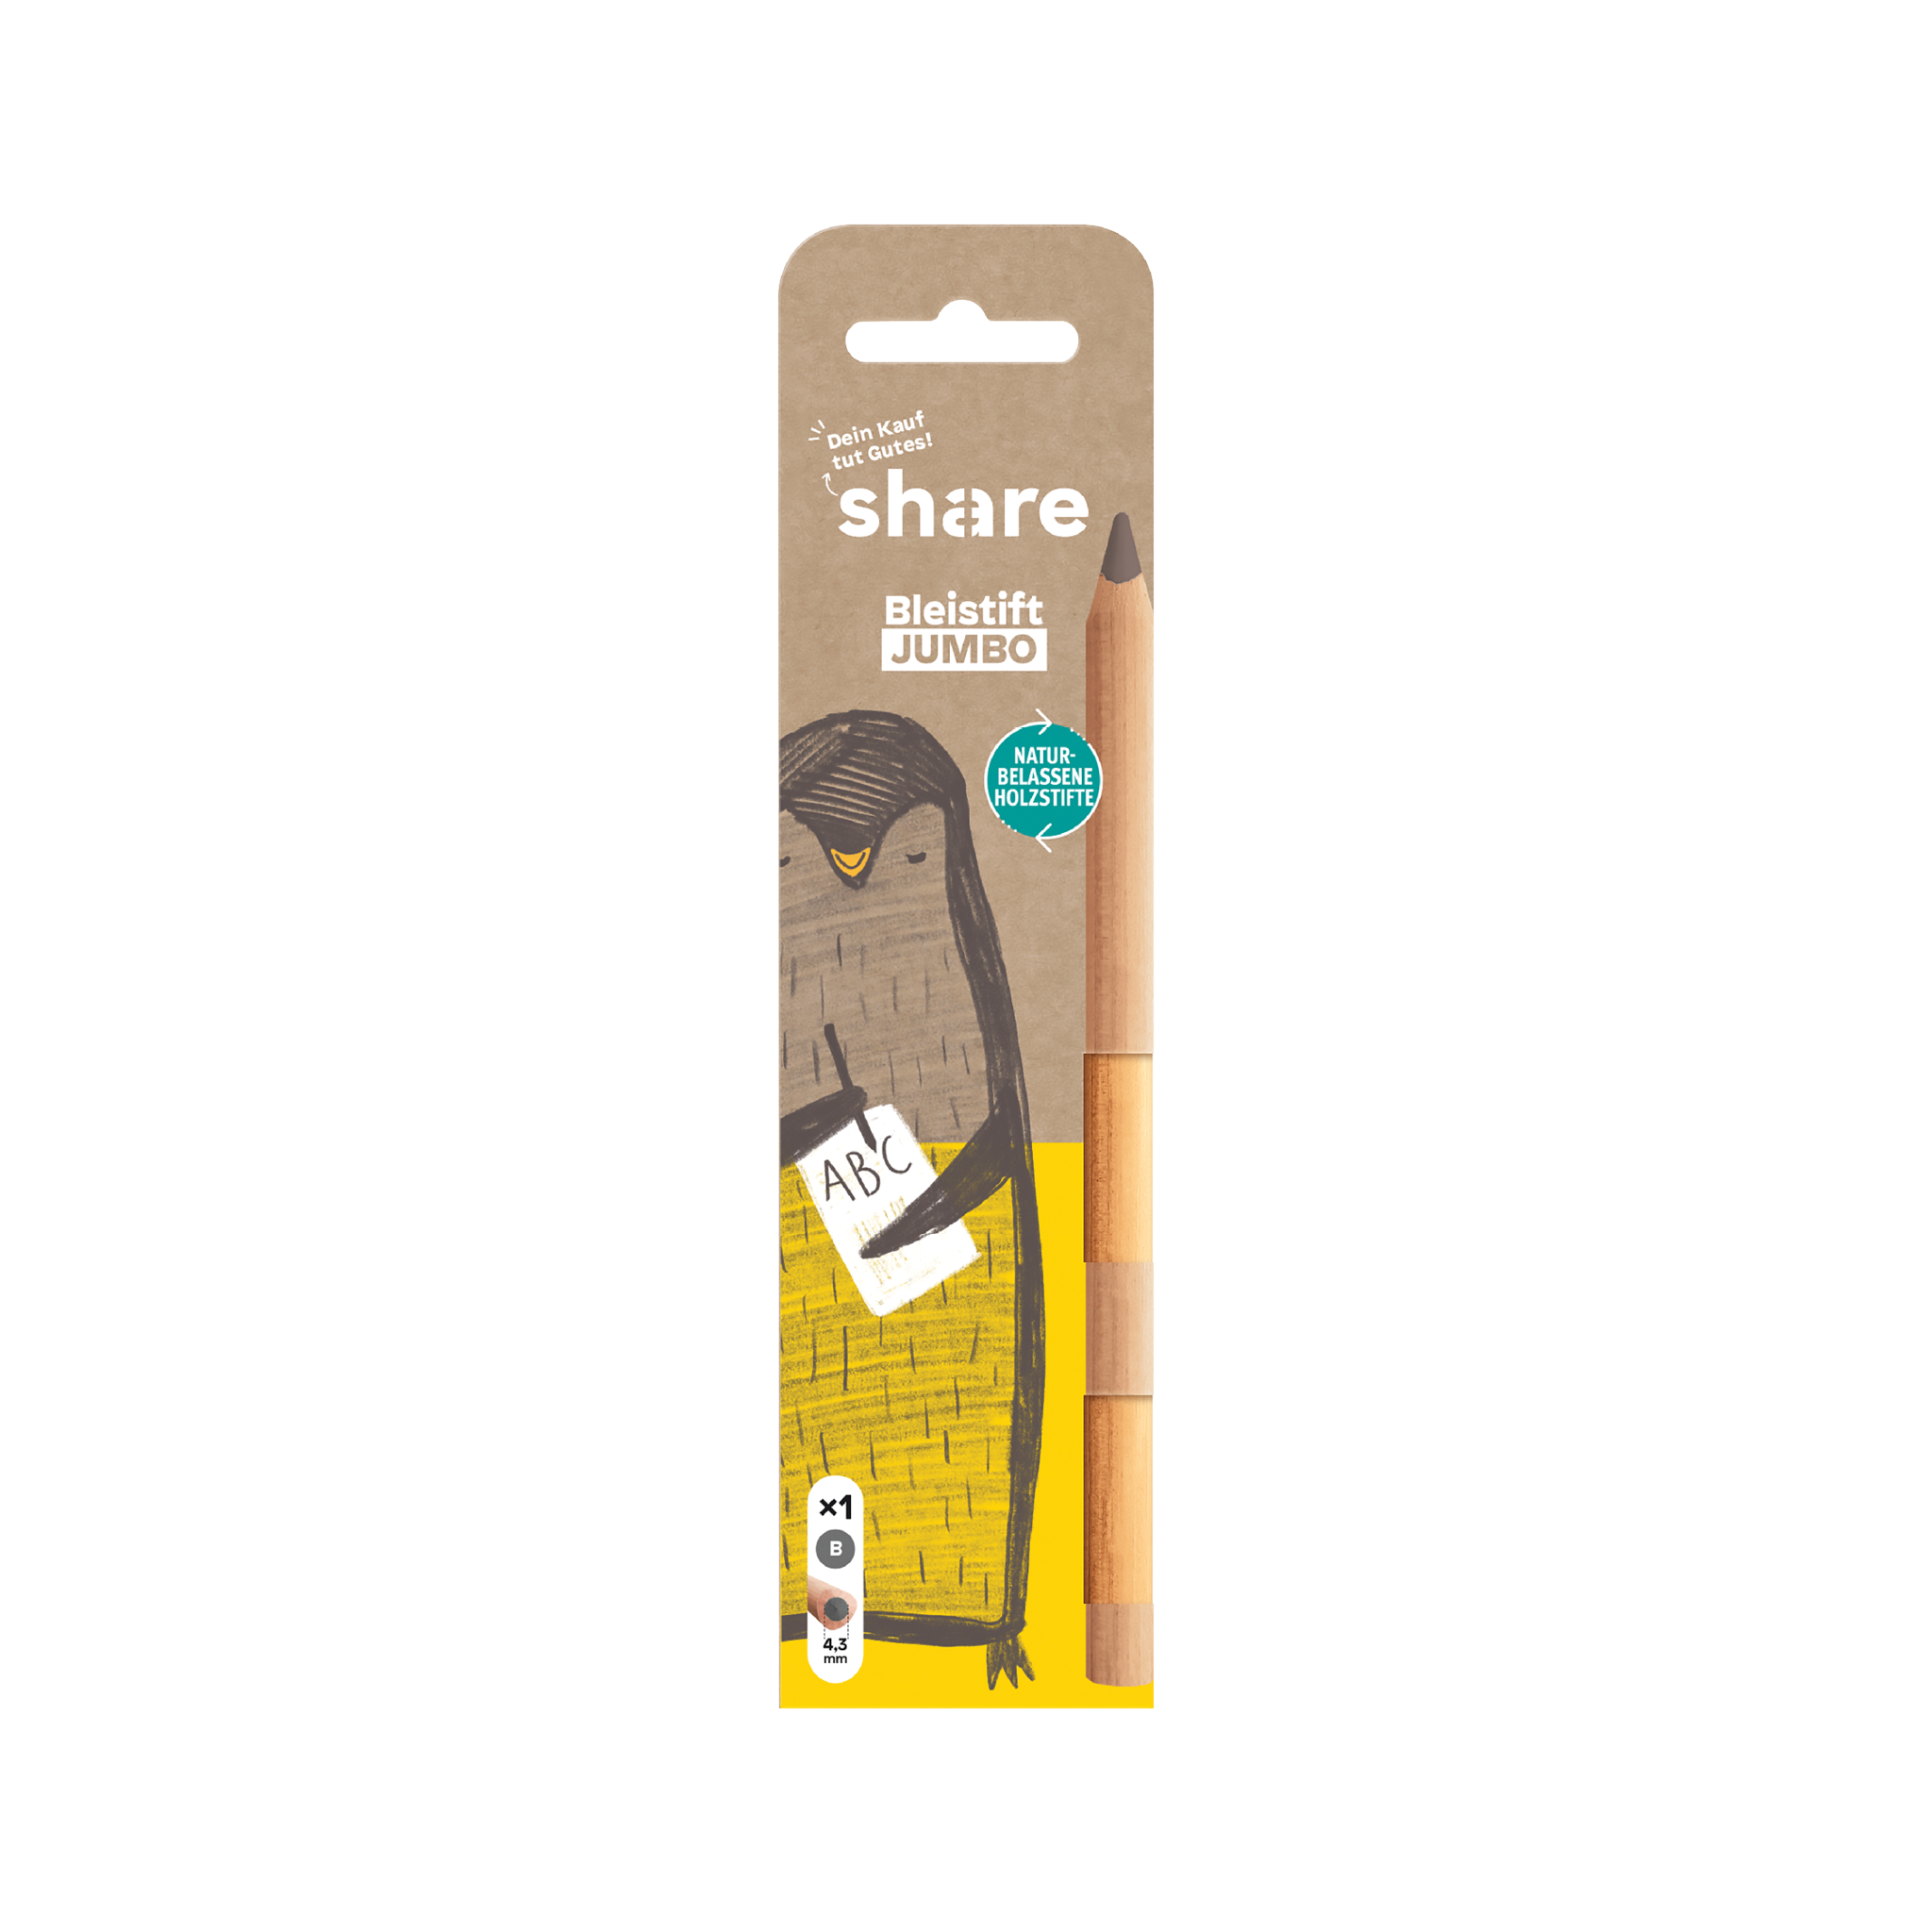 Eine Aktie Bleistift Jumbo B, verpackt mit einem verspielten Tiercharakter-Design auf einer Kartonrückwand, die seine umweltfreundlichen und bild